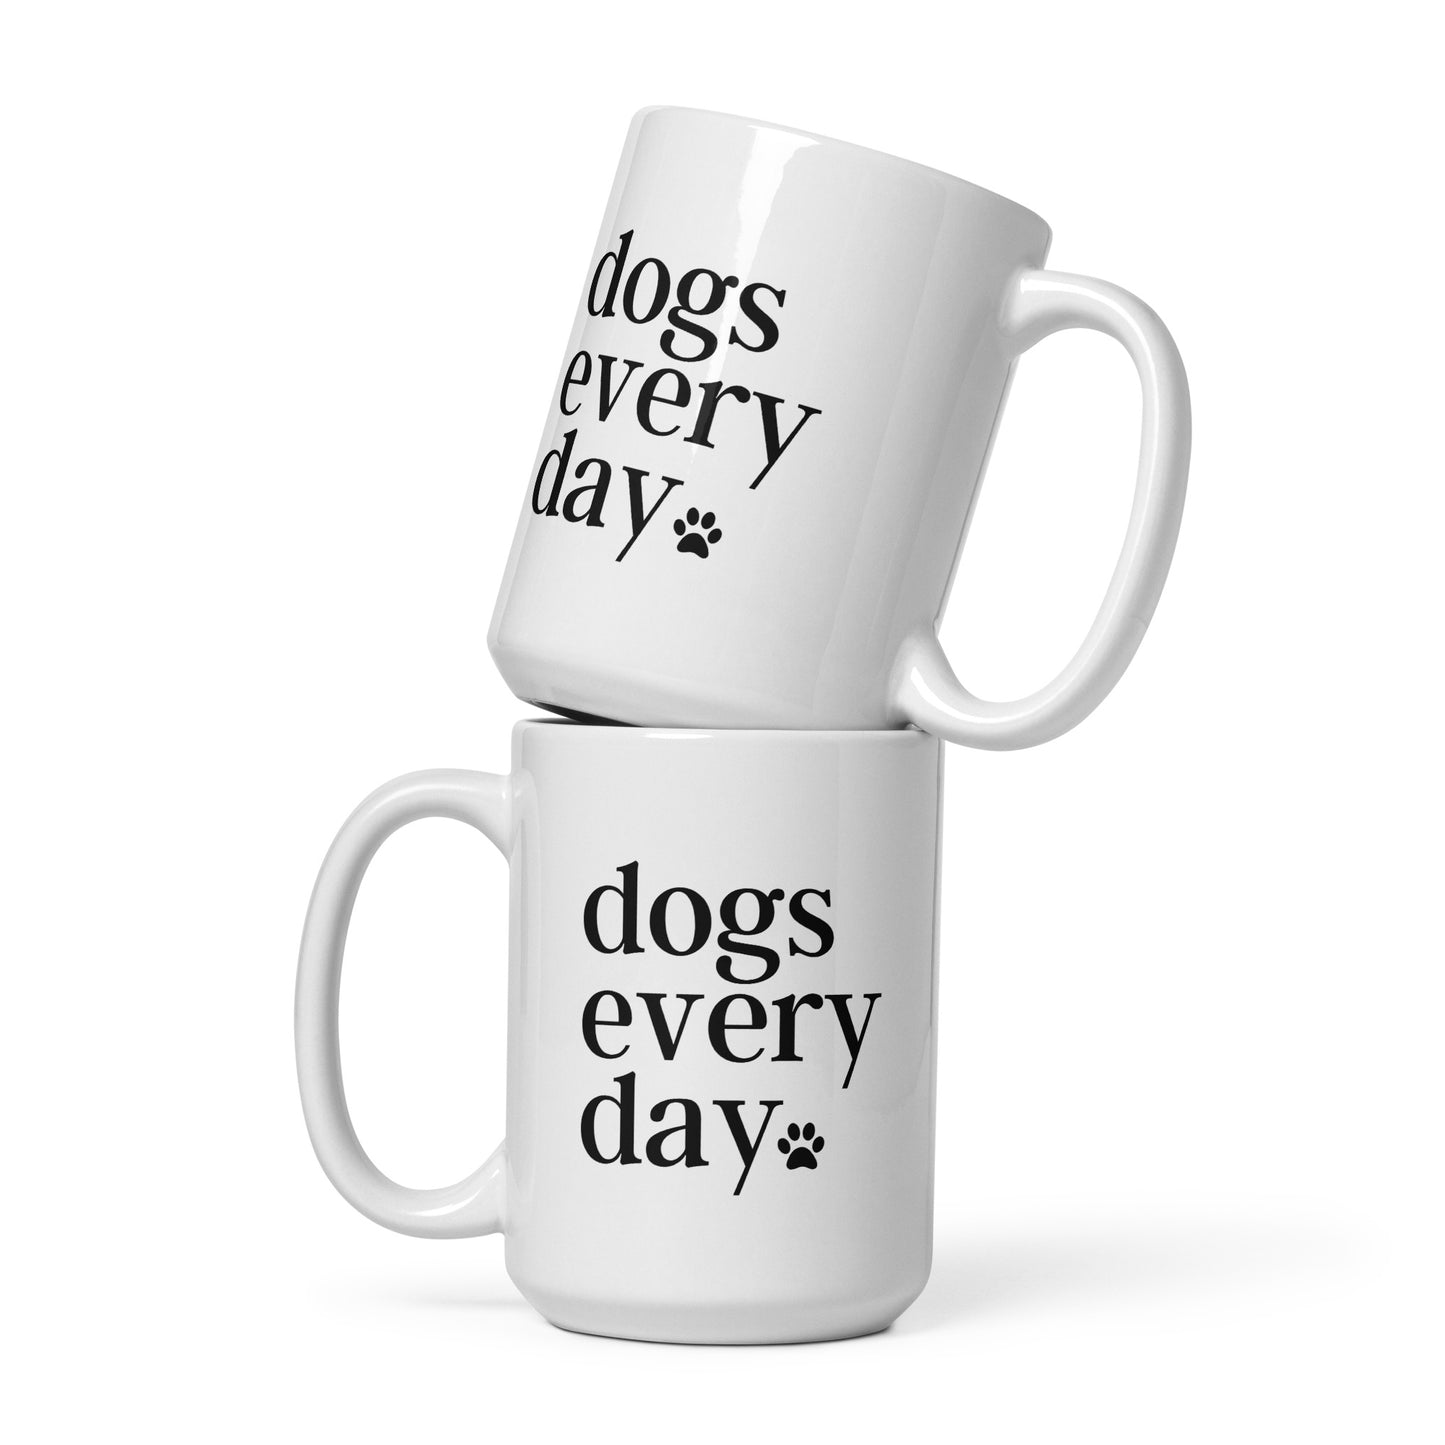 Dogs Every Day - Dog Lovers Mug